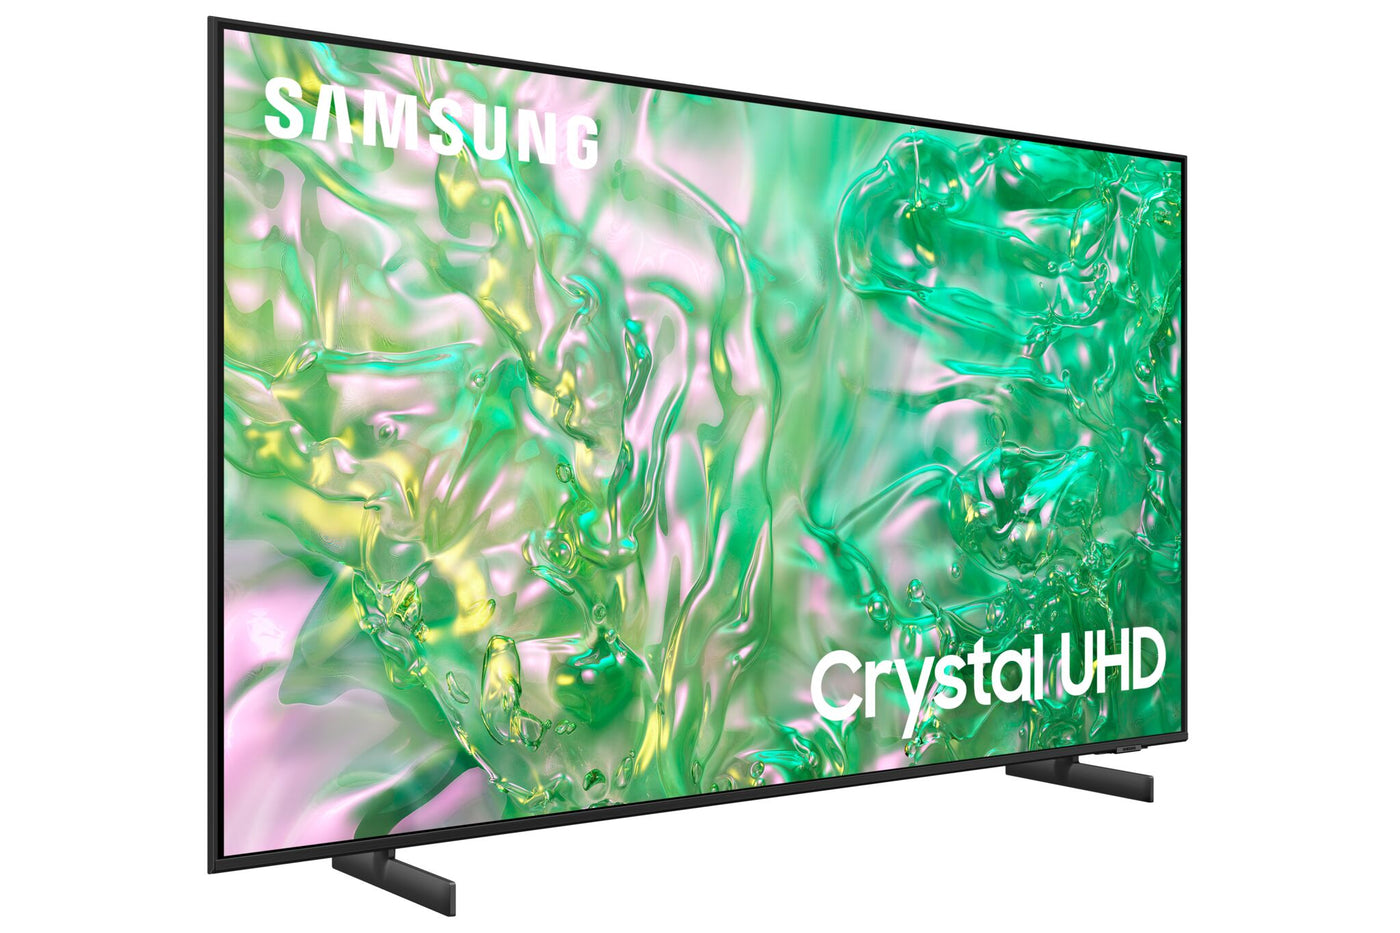 Samsung 75” 4K Tizen Smart CUHD TV - UN75DU8000FXZC